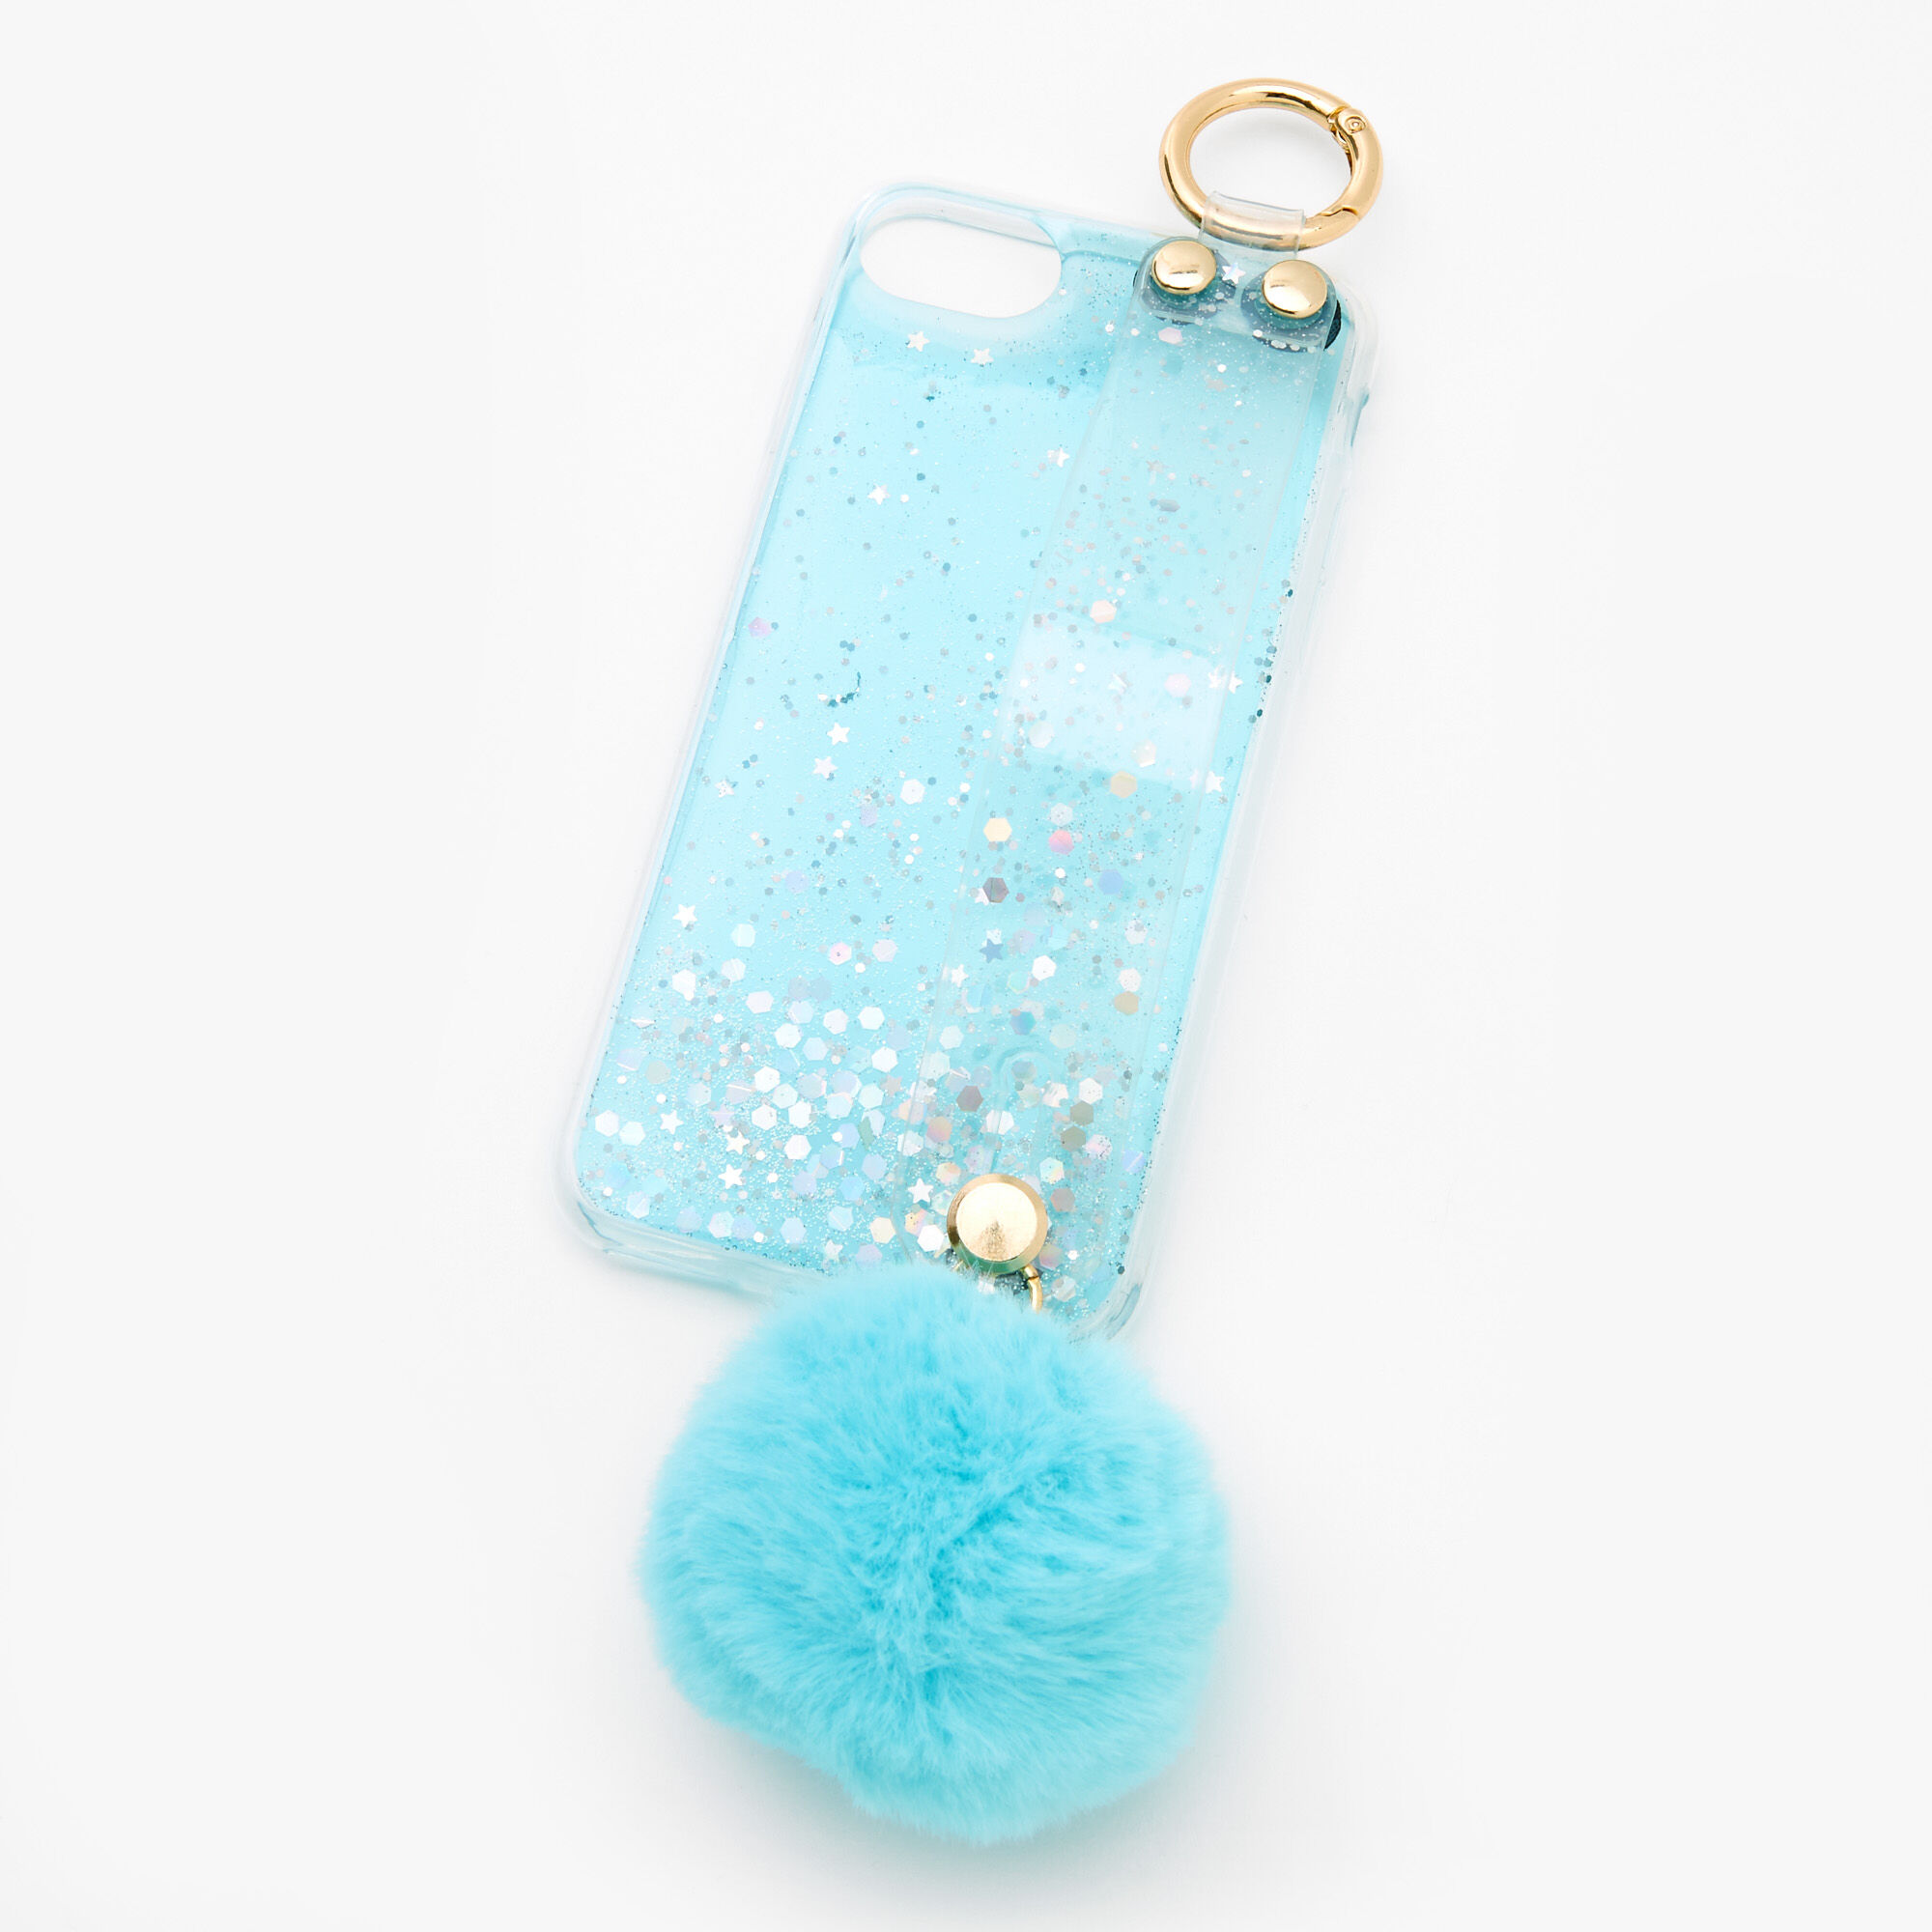 Coque de portable pompon bleu clair à paillettes - Compatible avec iPhone 6/7/8/SE